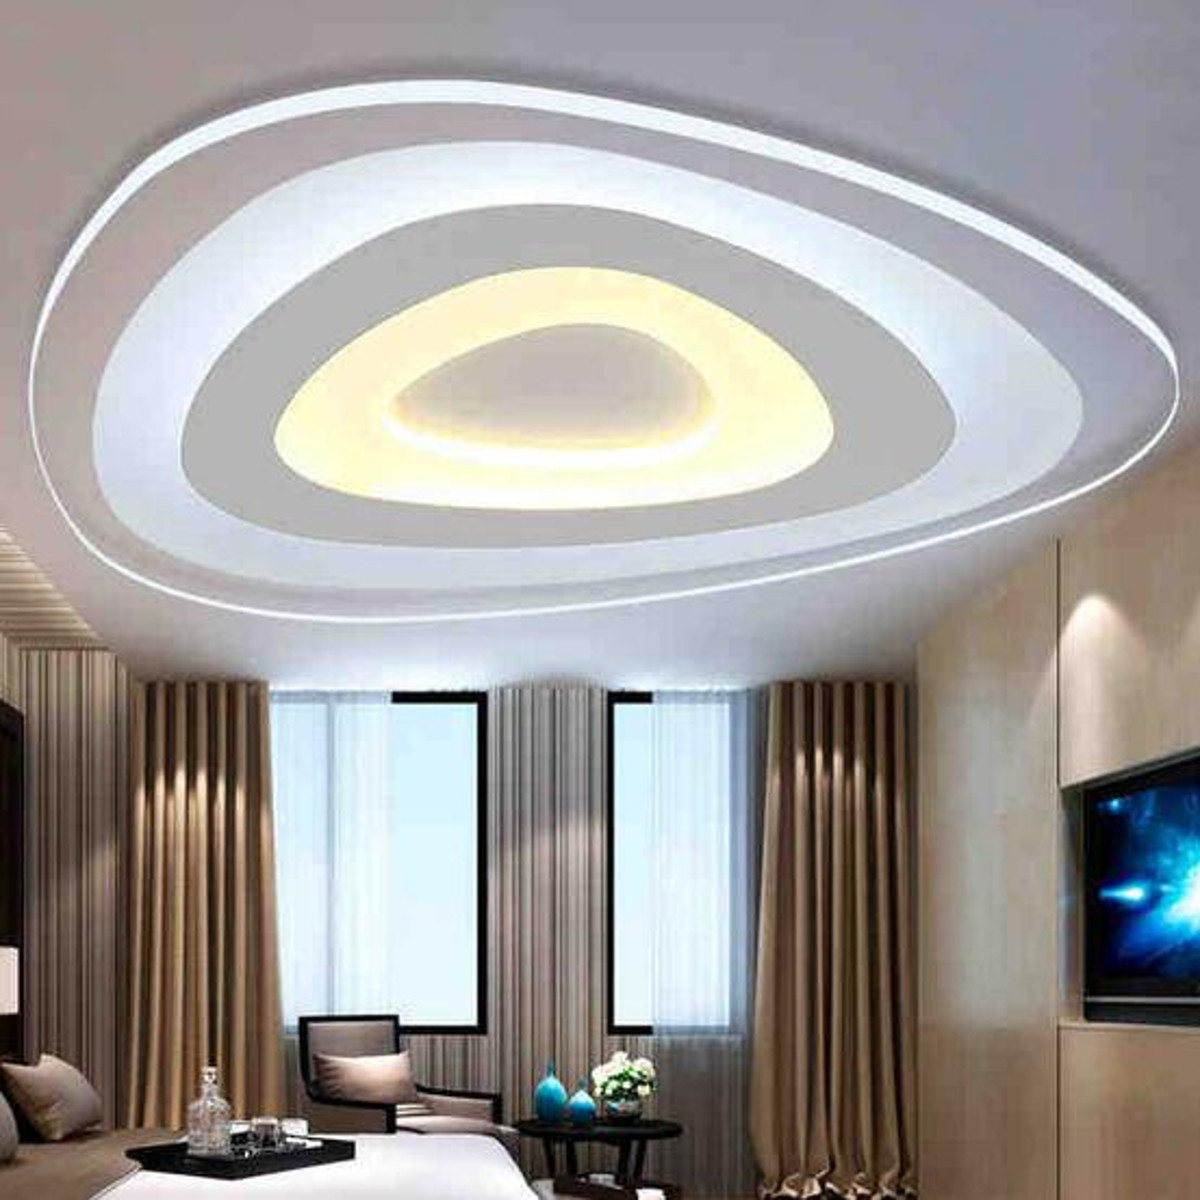 Led Bedroom Ceiling Lights
 12W Modern Ultrathin LED Ceiling Light 3 Color Adjustable